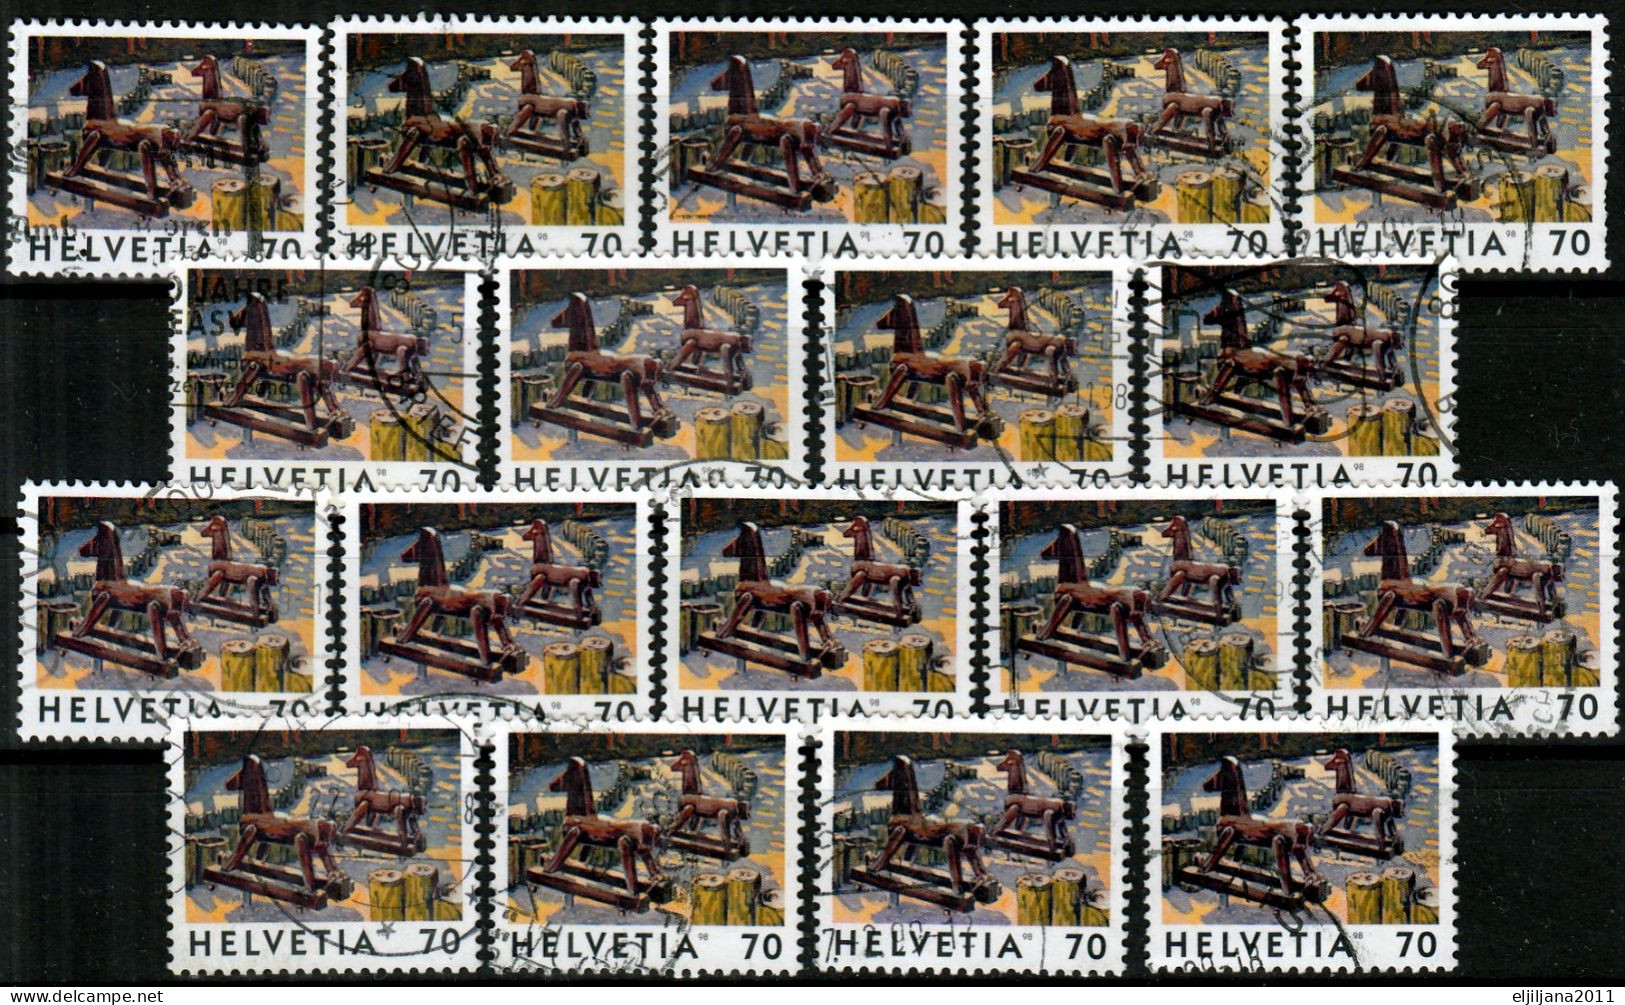 Switzerland / Helvetia / Schweiz / Suisse 1998 ⁕ Deux Chevaux Mi.1646 ⁕ 18v Used - Oblitérés